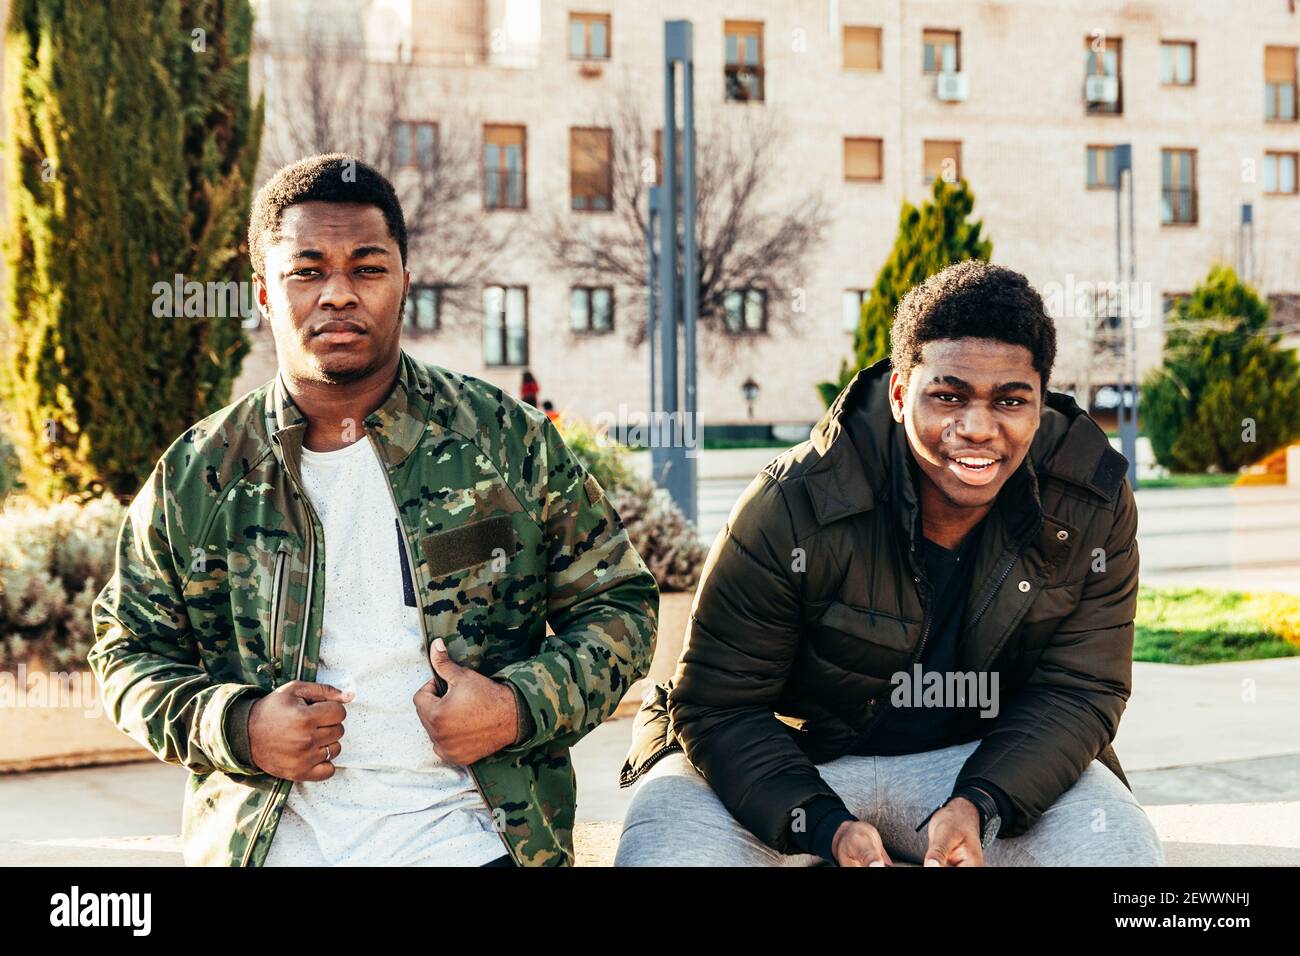 Ritratto di due amici afro-americani sorridenti e divertenti in uno spazio urbano. Foto Stock